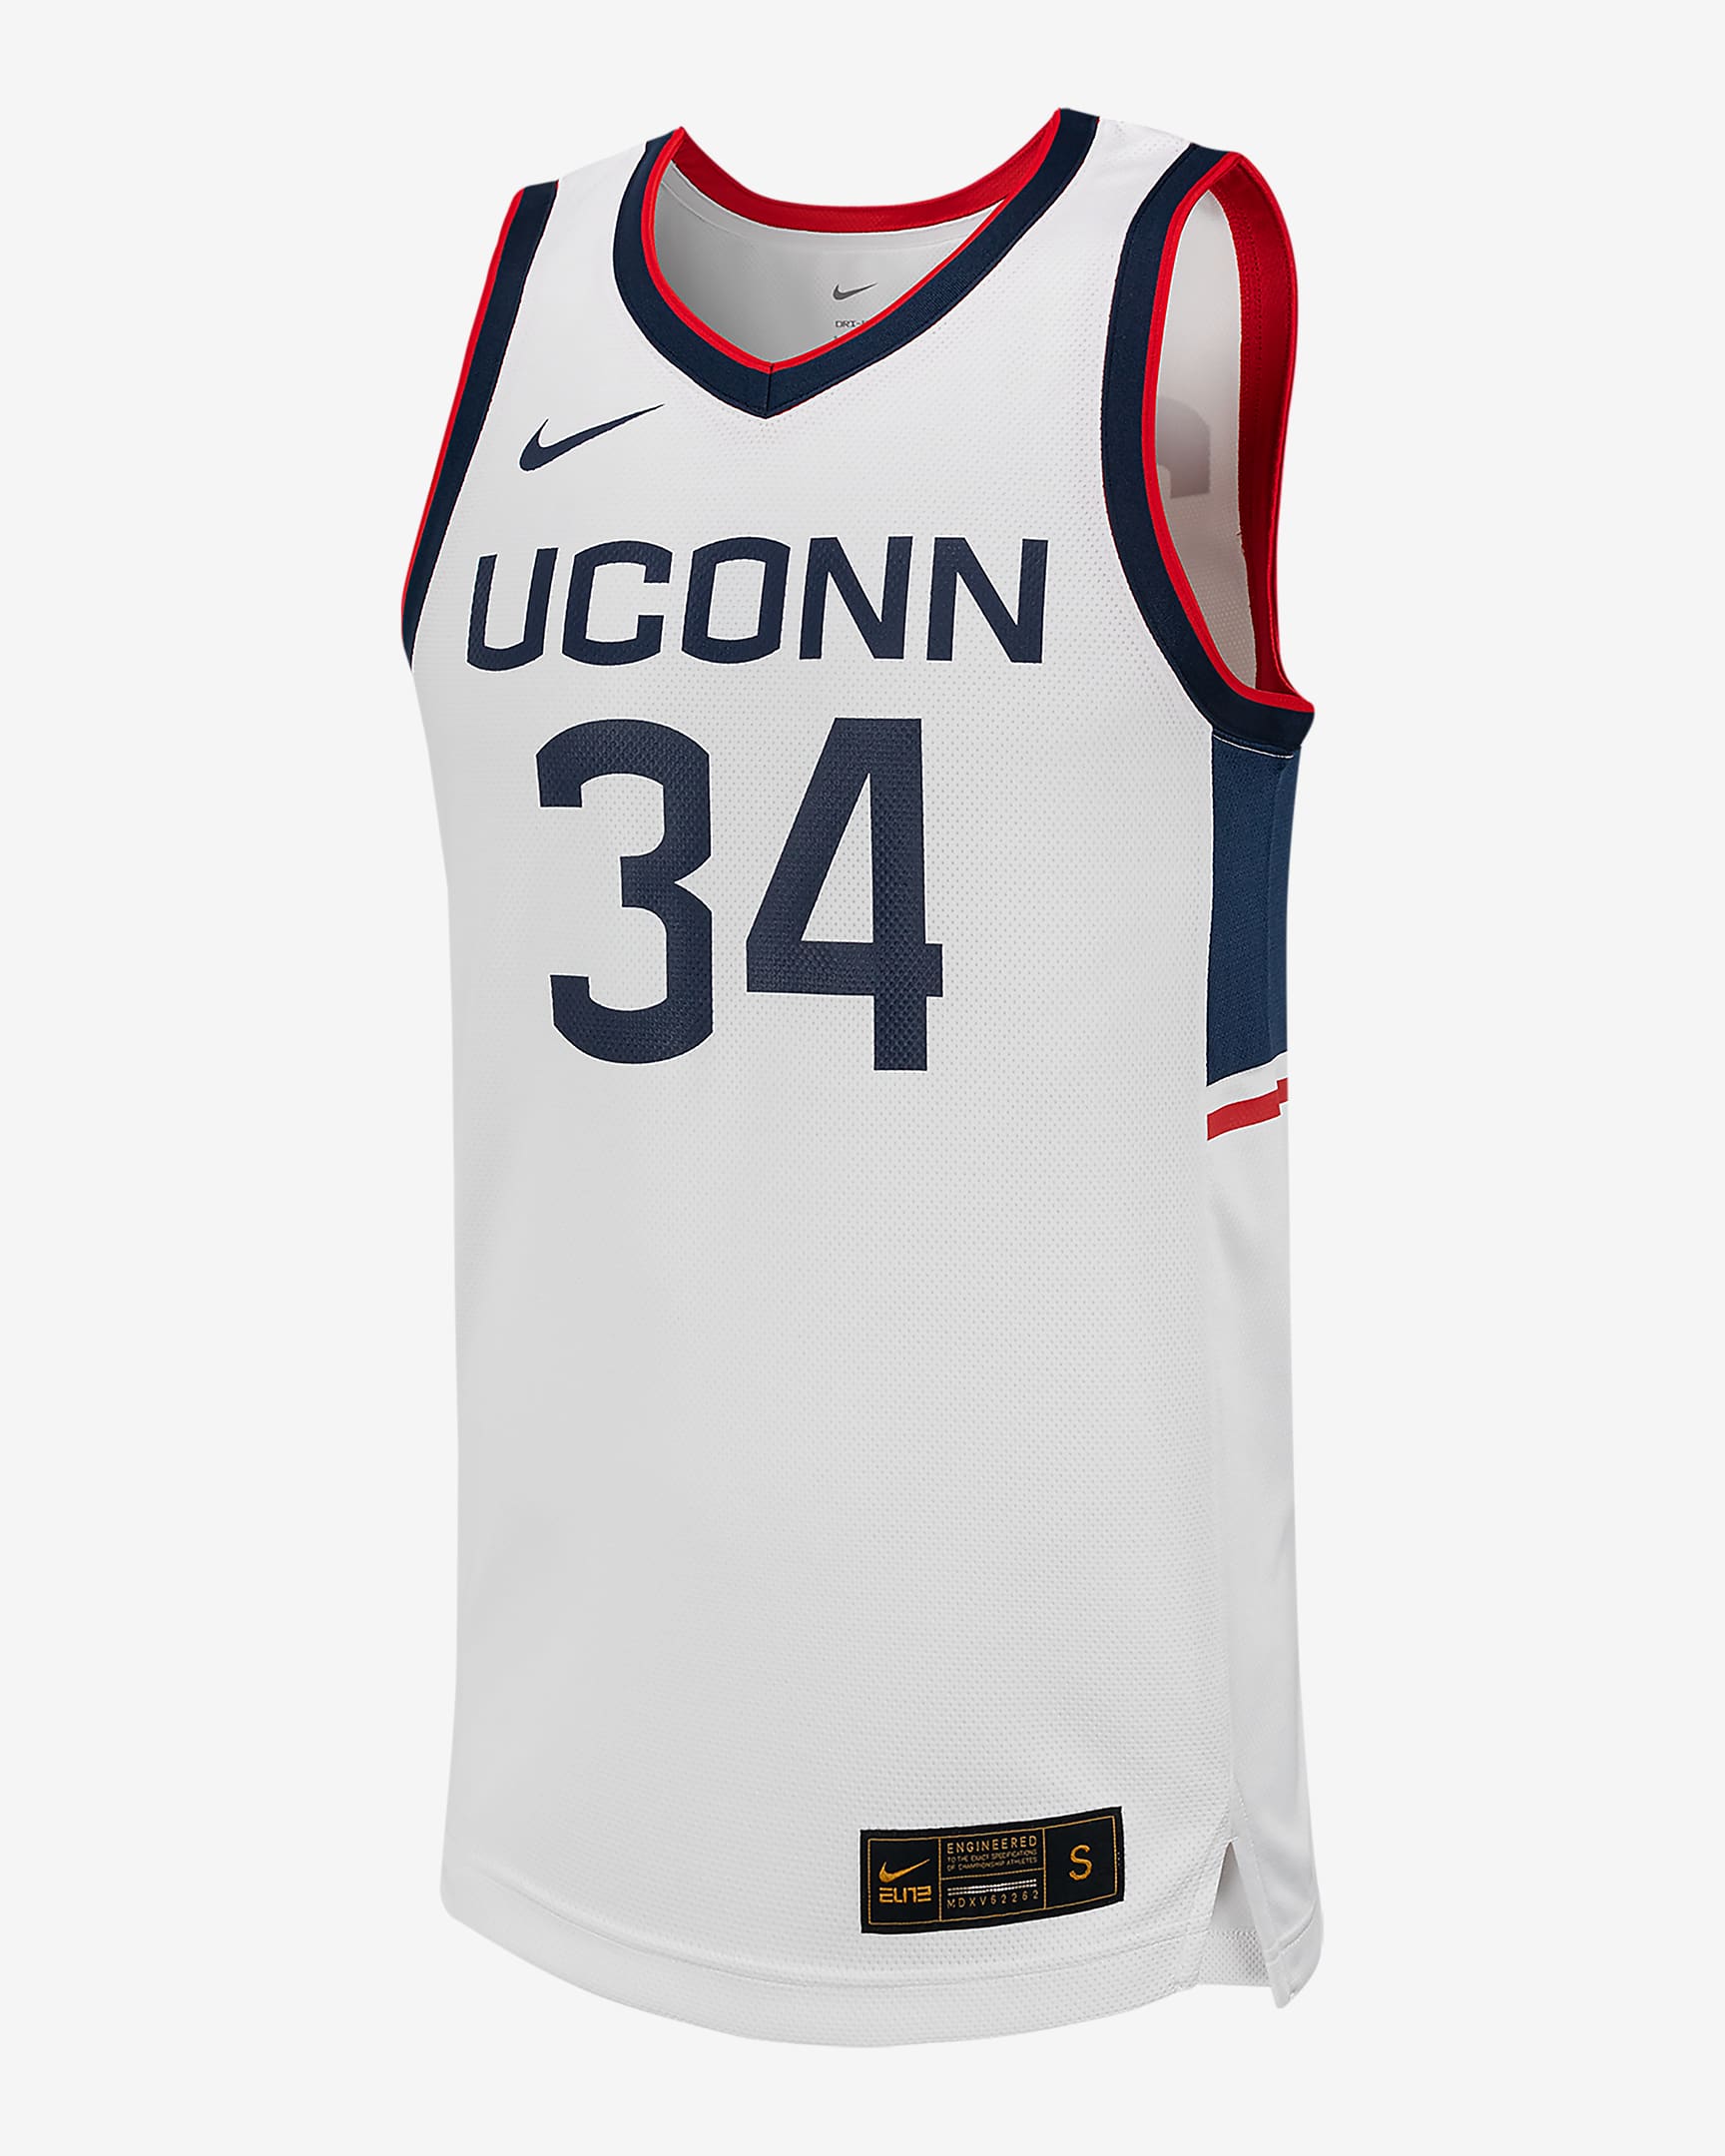 Jersey de básquetbol universitario Nike Replica para hombre UConn. Nike.com